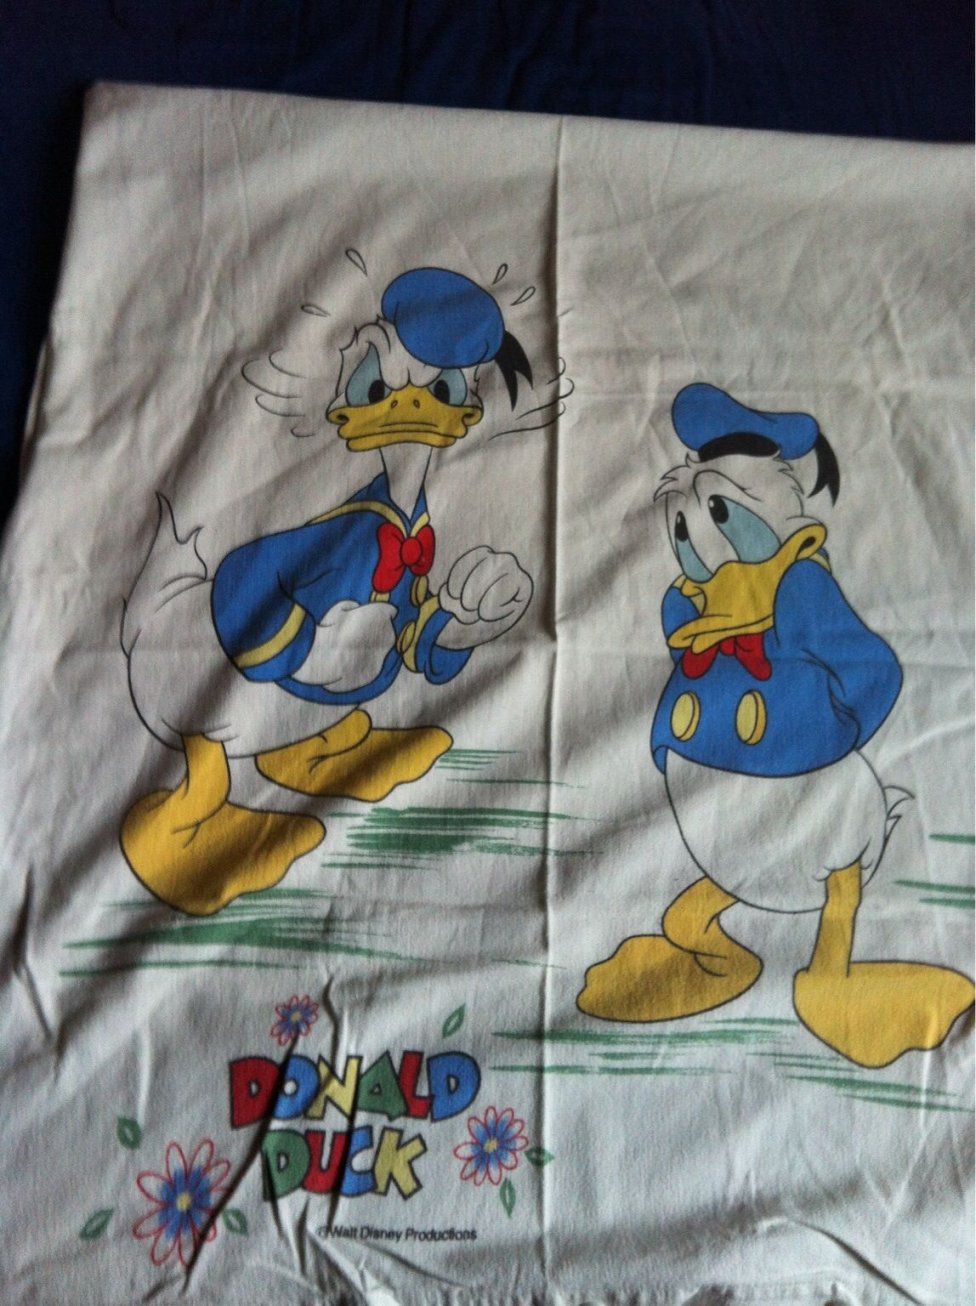 Gebraucht Donald Duck Bettwäsche In 67591 Wachenheim Um € 500 – Shpock von Donald Duck Bettwäsche Bild